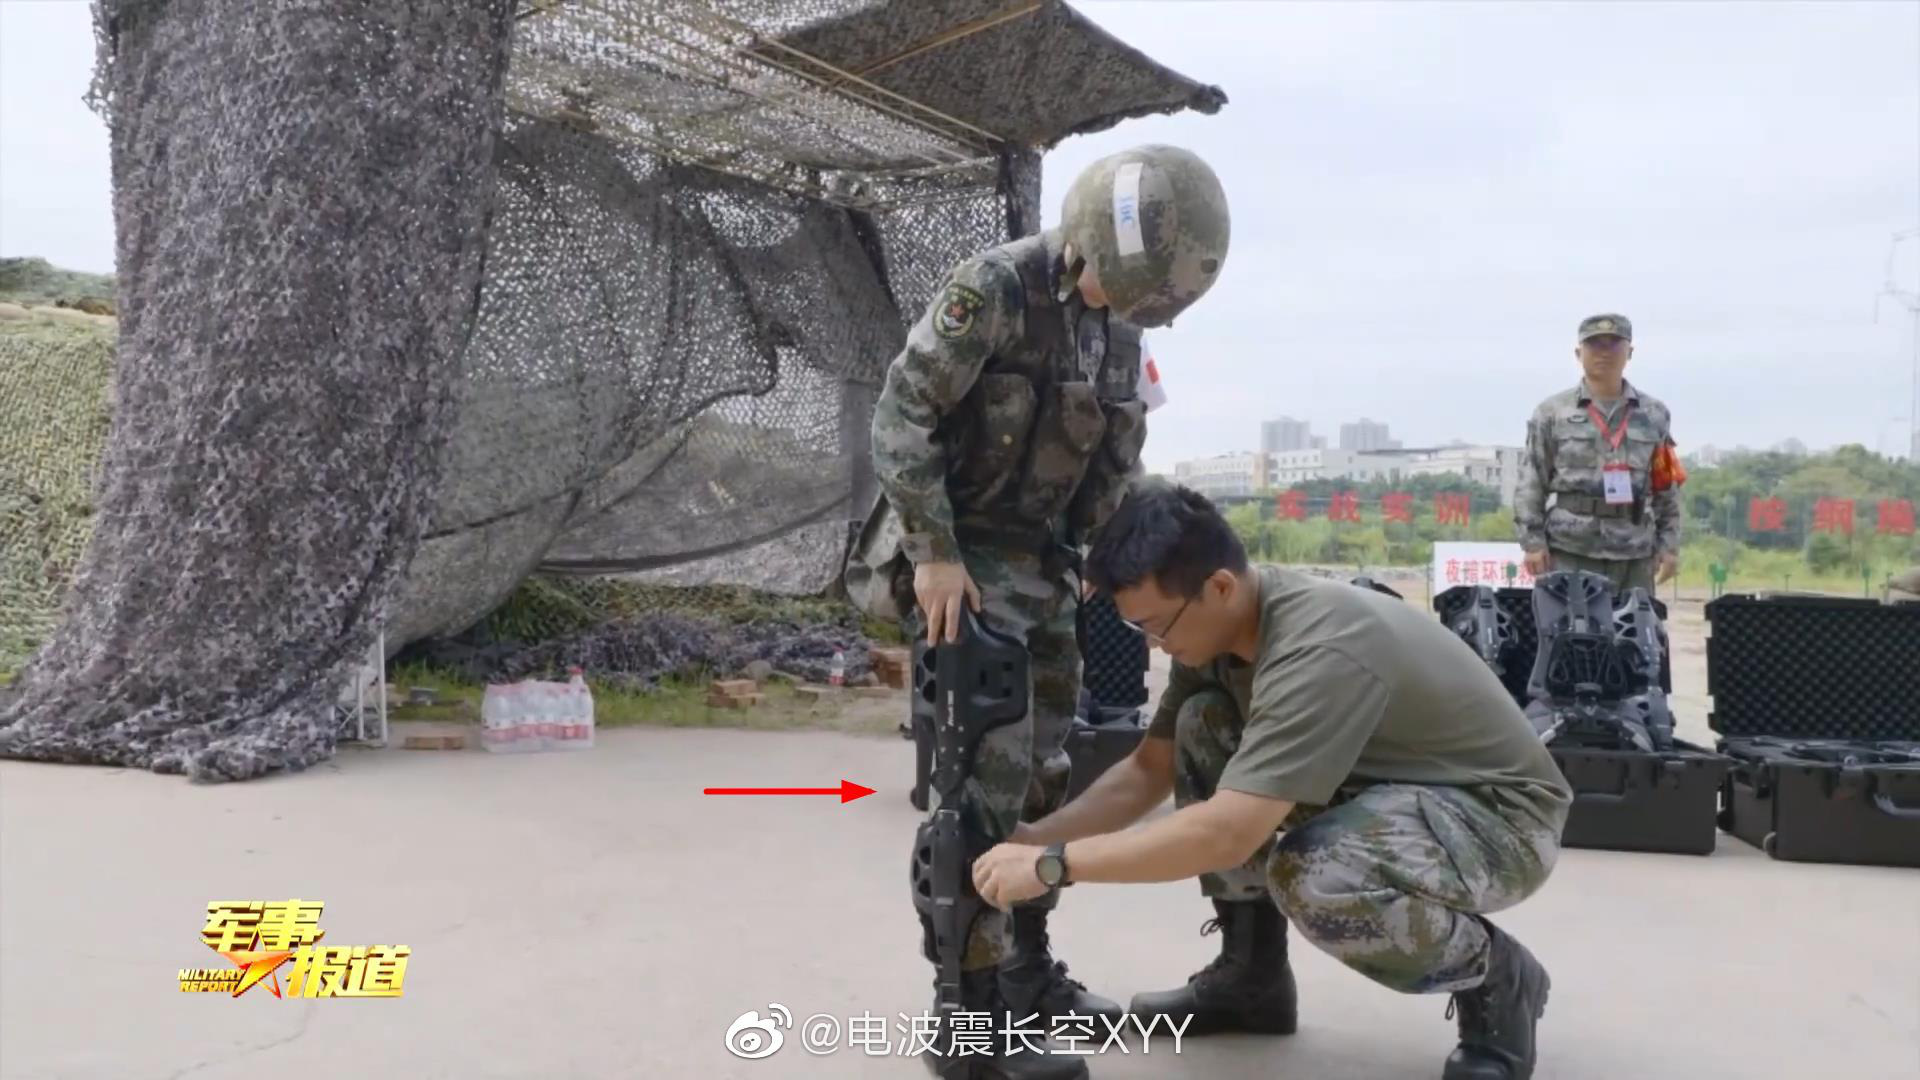 Lính PLA mặc giáp Iron Man: Trung Quốc sắp có lợi thế áp đảo, đây là đáp án của Ấn Độ trước cơn nguy khốn? - Ảnh 1.